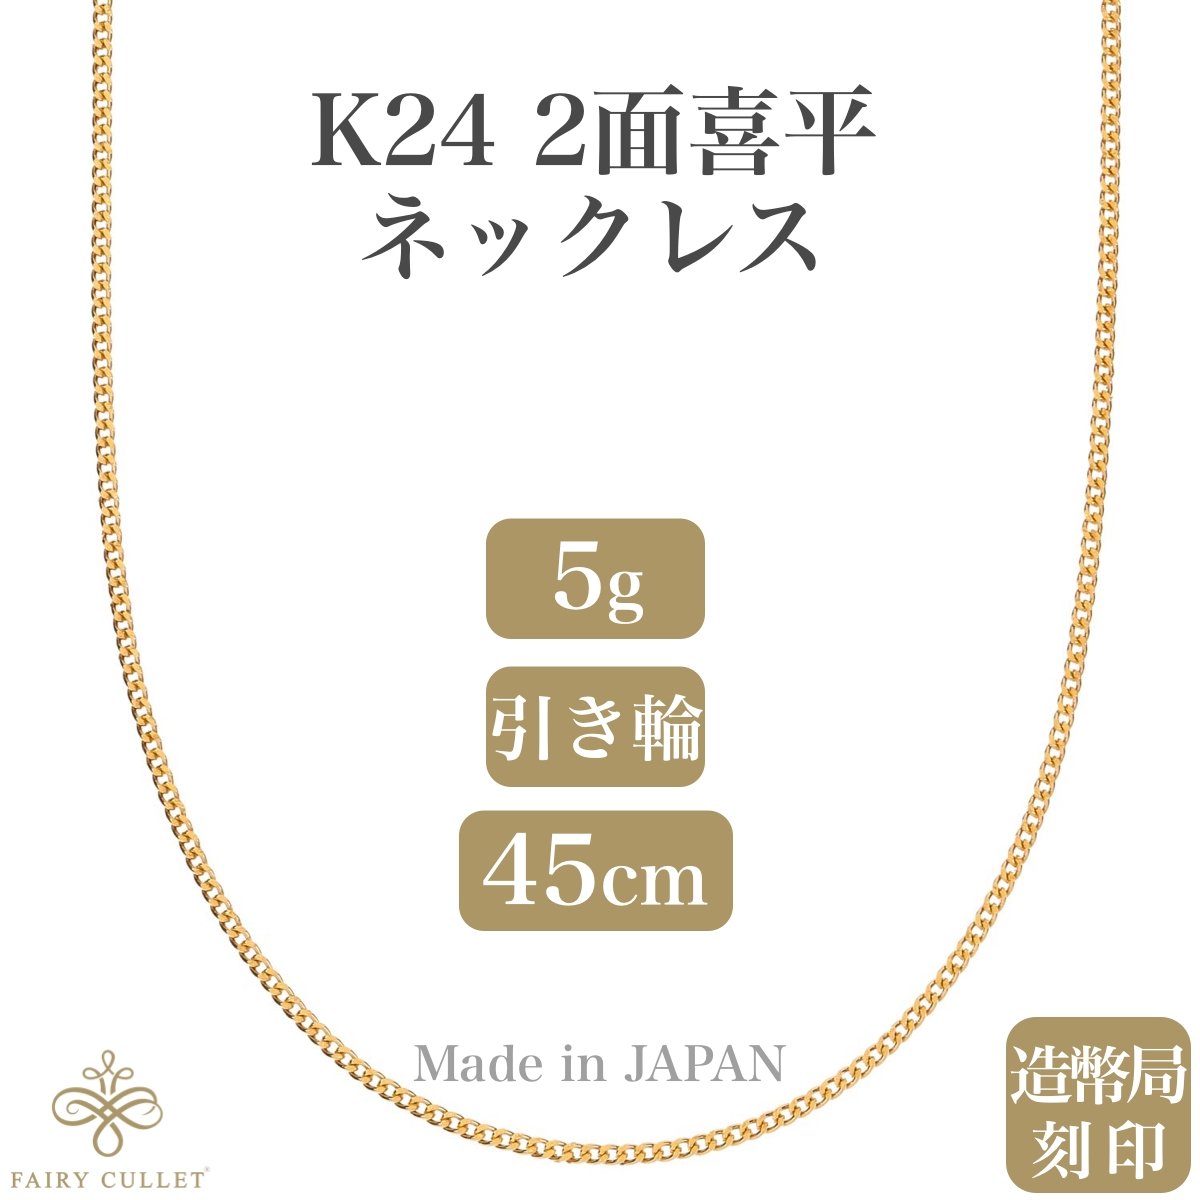 24金ネックレス K24 2面喜平チェーン 日本製 純金 検定印 5g 45cm引き